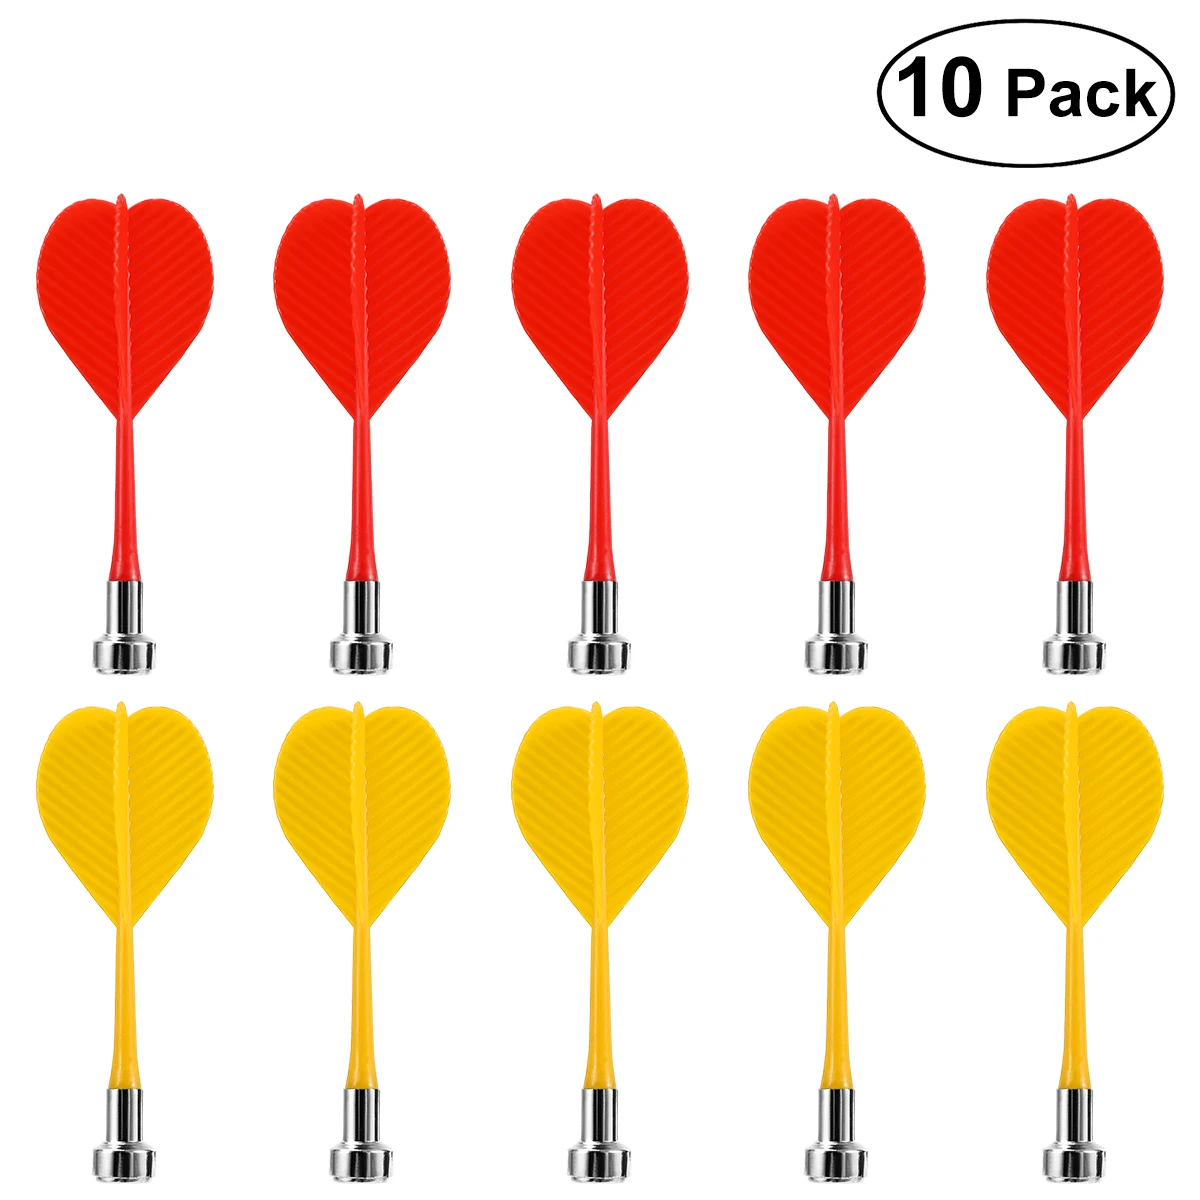 NUOLUX 10 шт. Замена надёжный безопасный пластиковый крыло магнитные дротики Bullseye цель игры игрушки (красный и желтый)